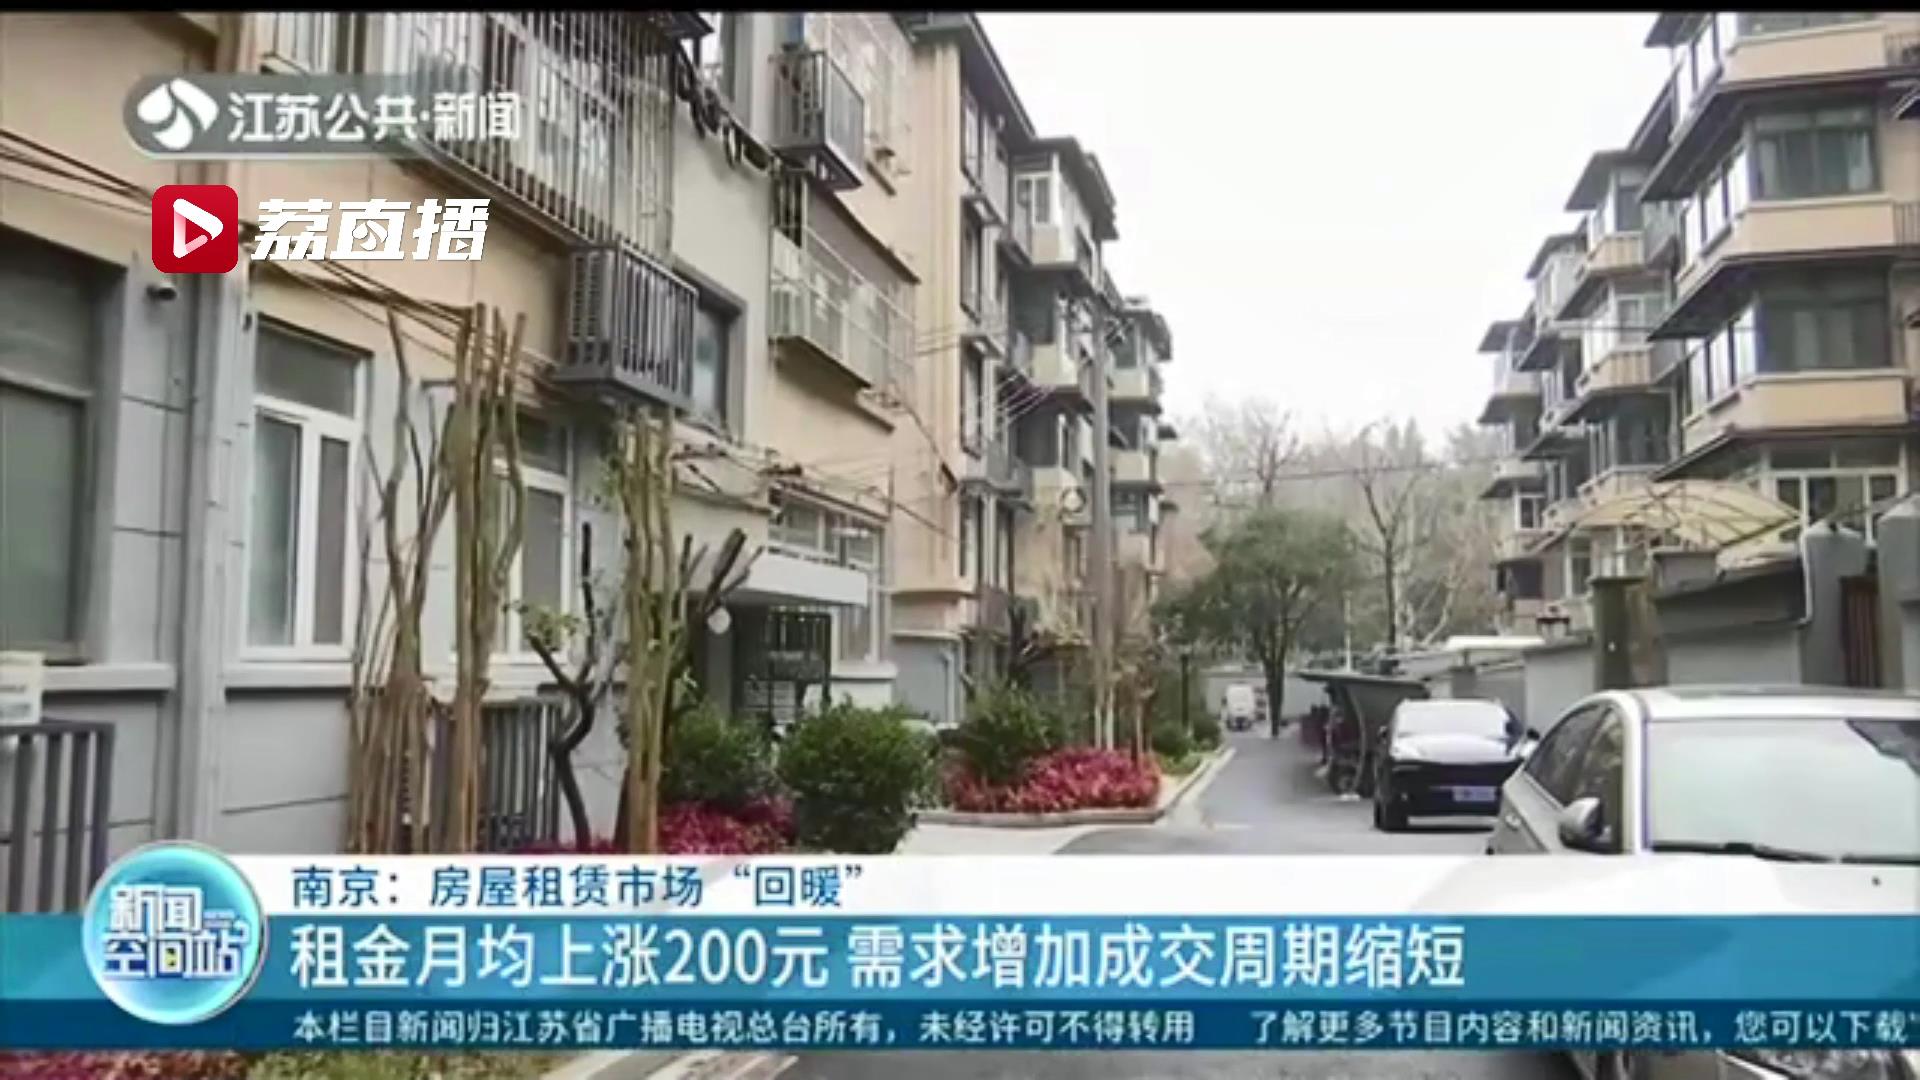 租金月均上涨200元 需求增加成交周期缩短 南京房屋租赁市场“回暖”